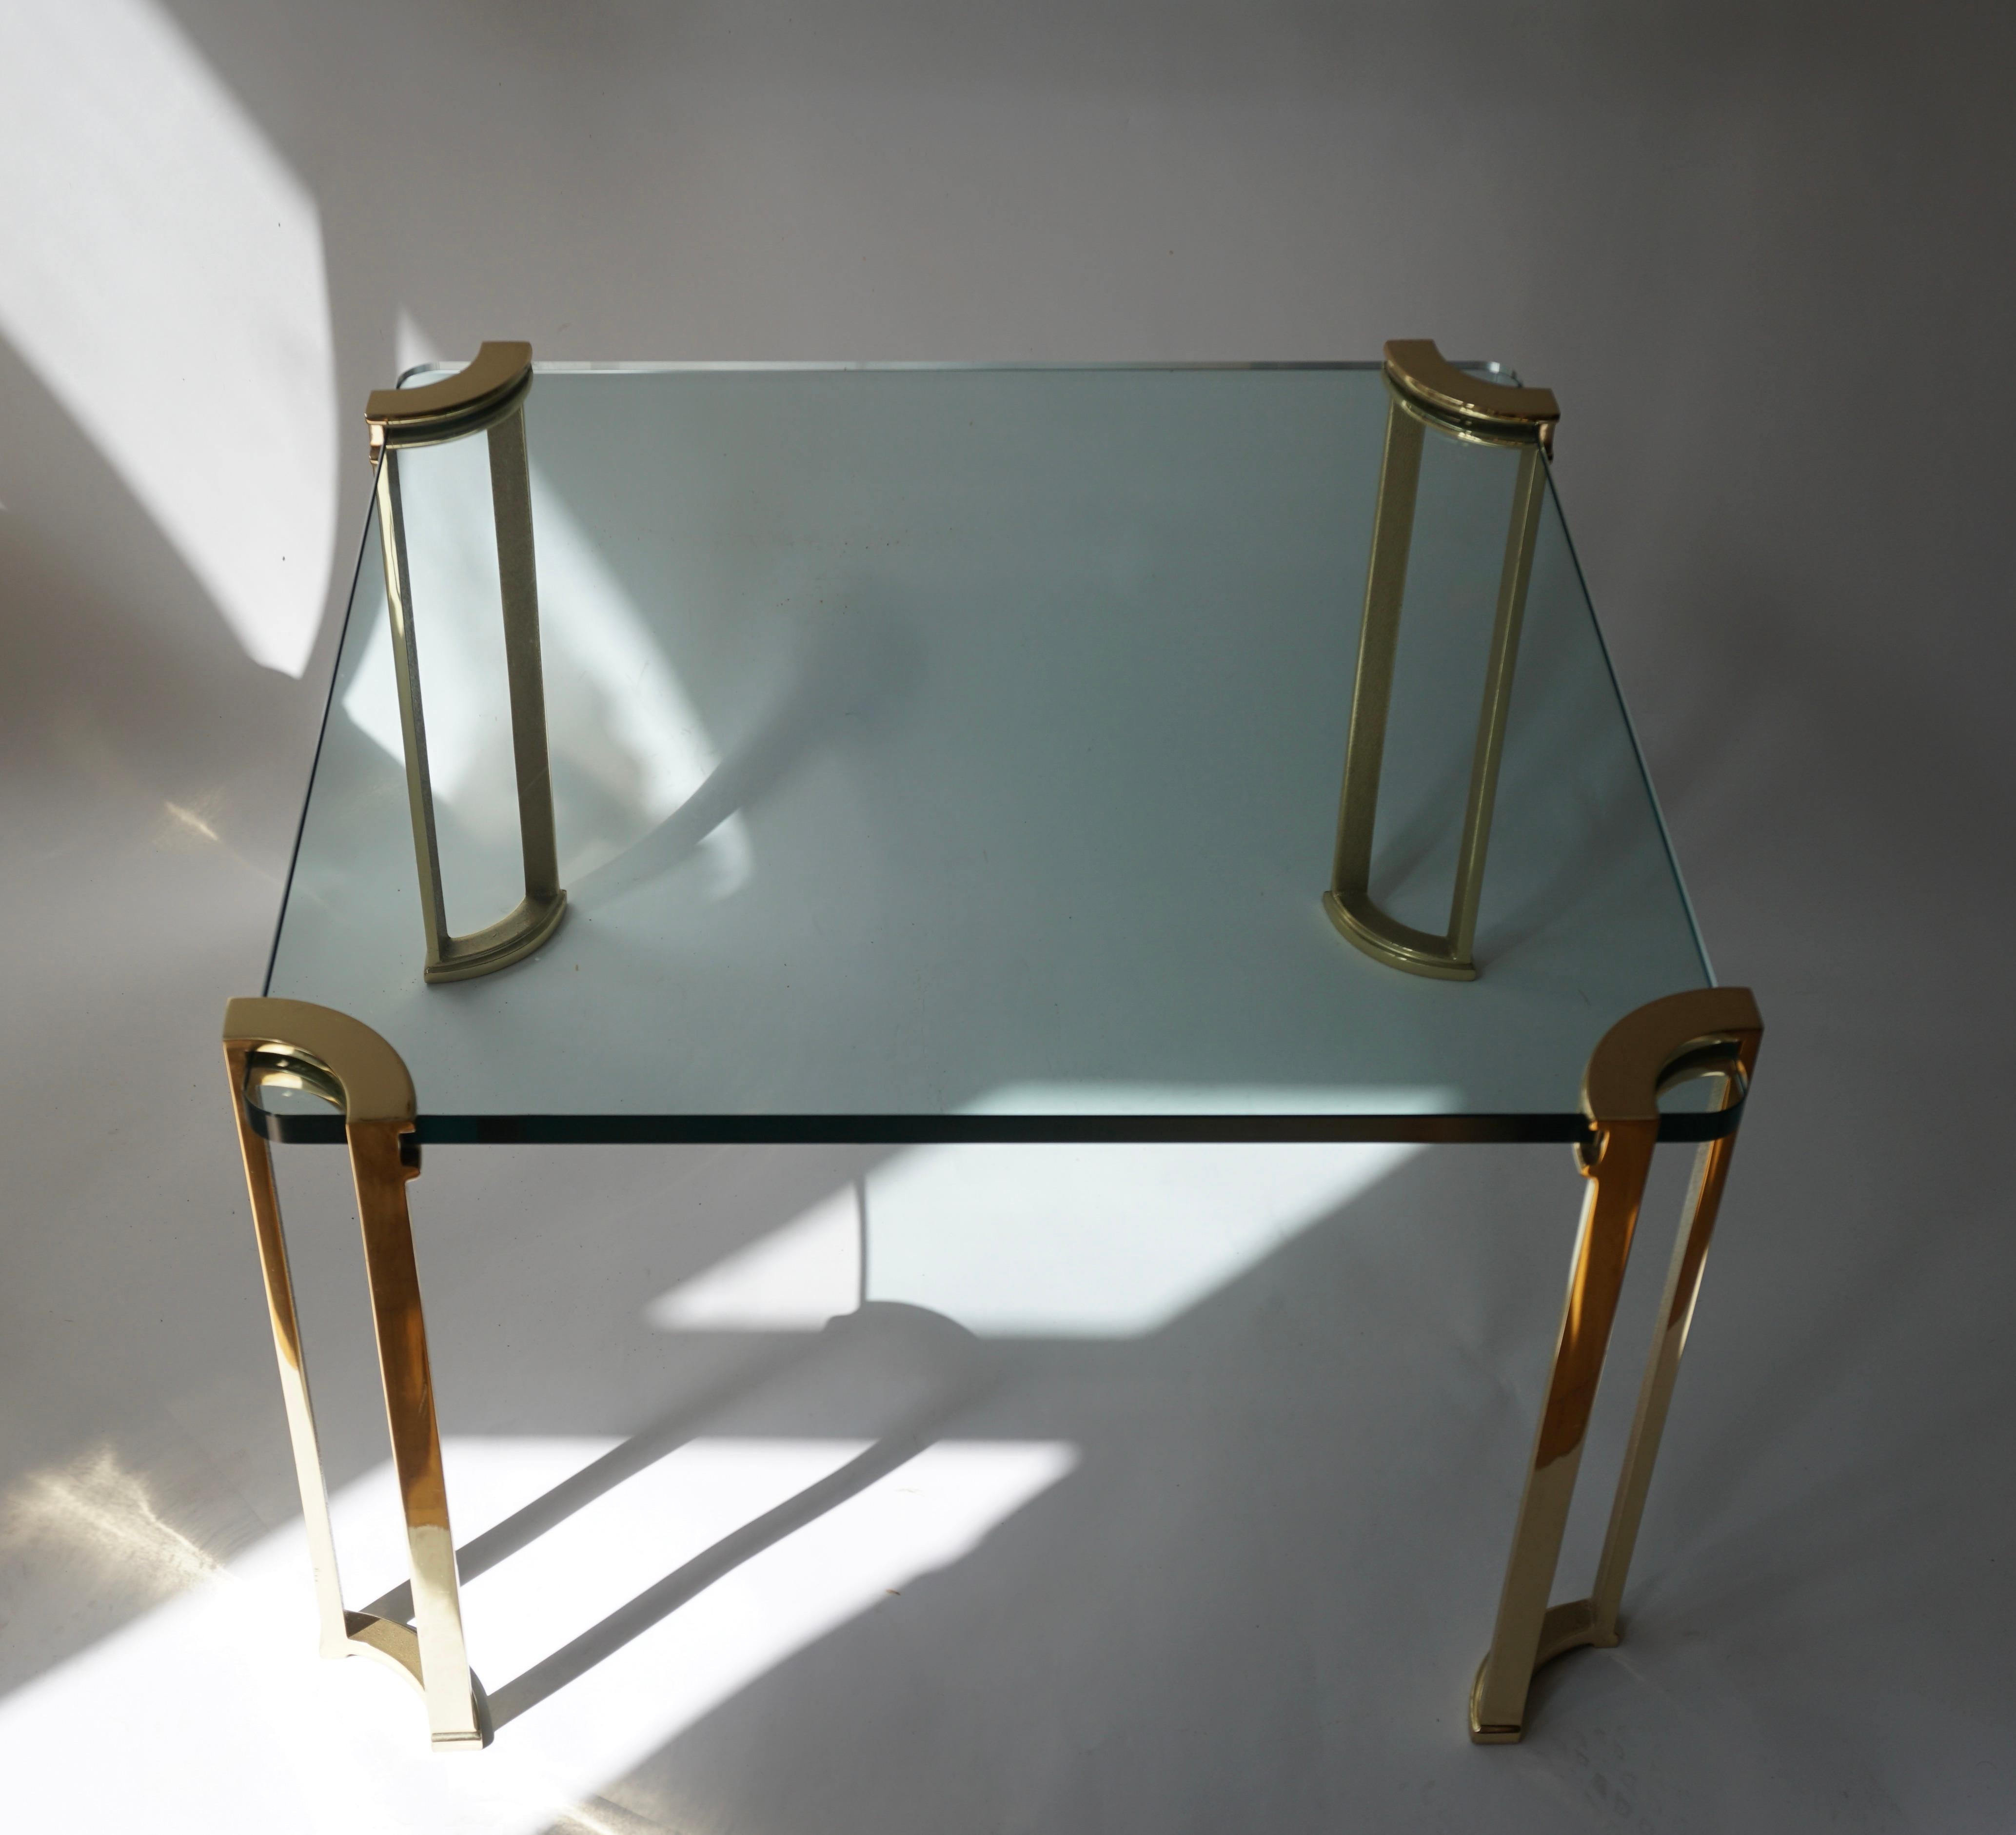 Cette table d'appoint ou de cocktail en bronze et en verre datant du début des années 1970 est dotée d'un plateau en verre et de pieds en bronze massif avec des détails architecturaux.

